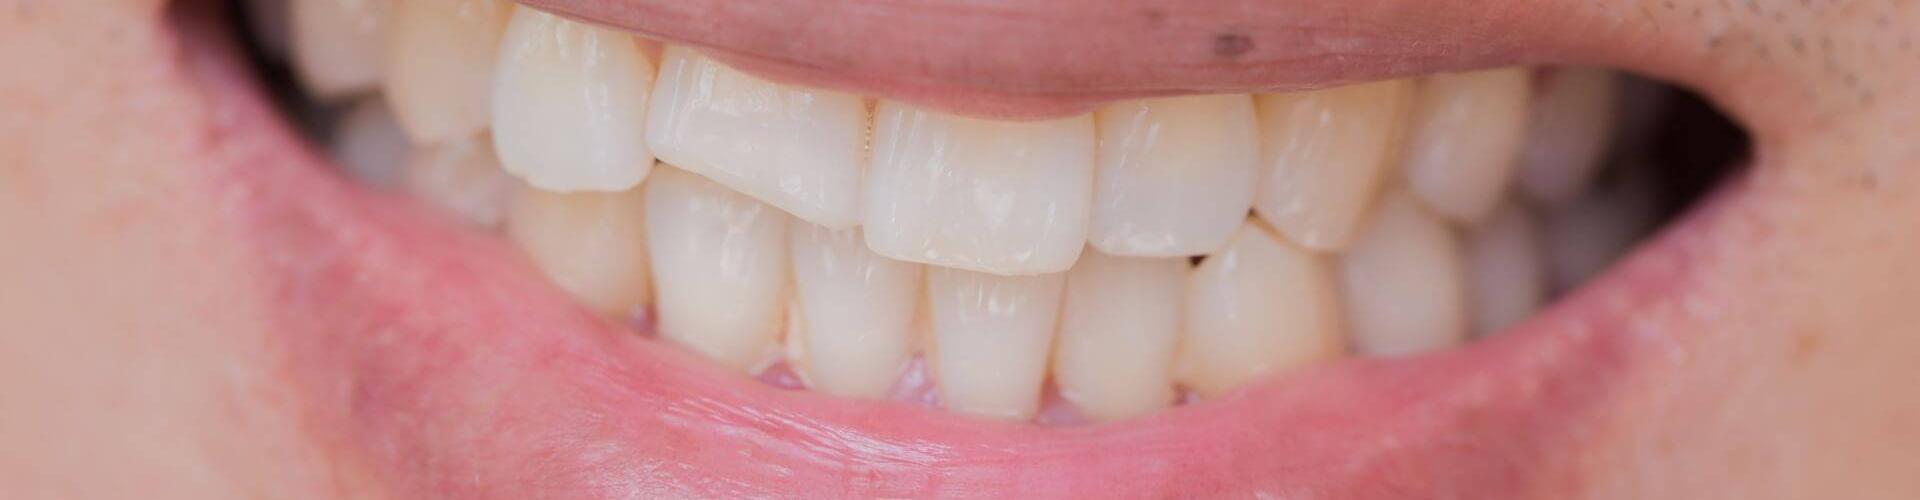 denti scheggiati: ricostruzioni dentali dirette